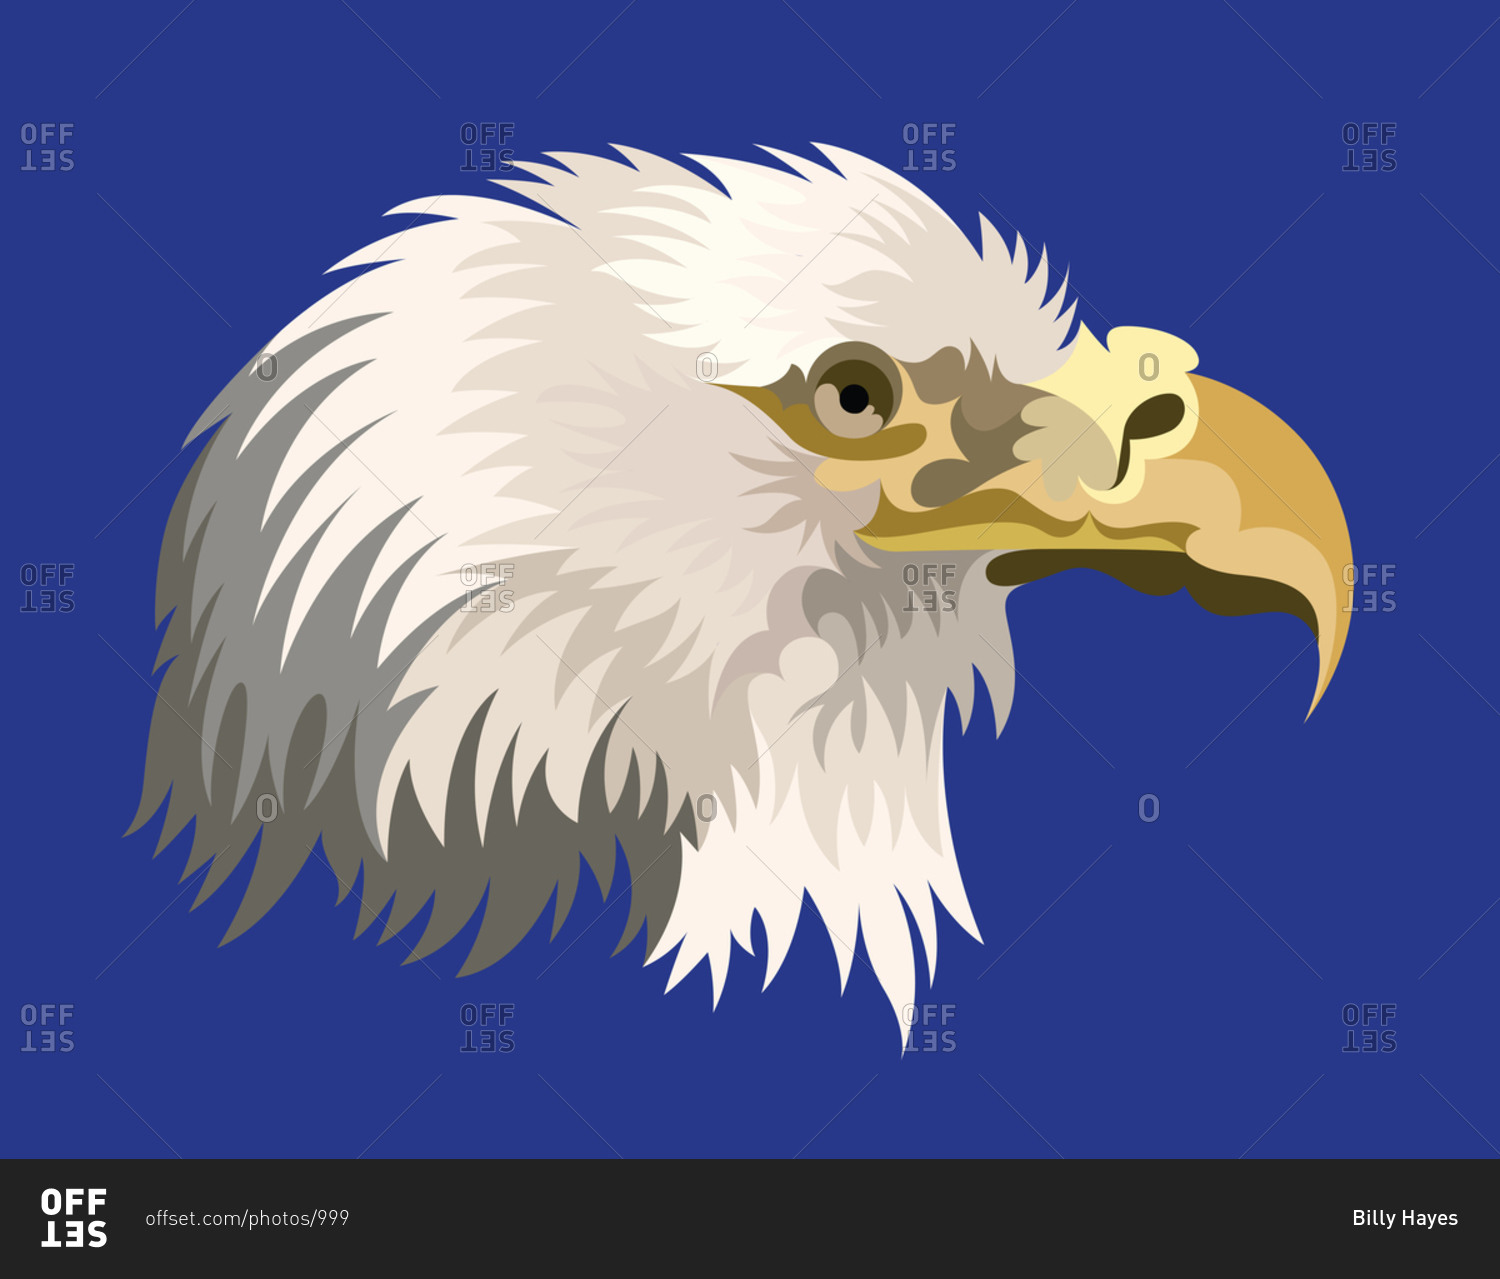 A war eagle portrait